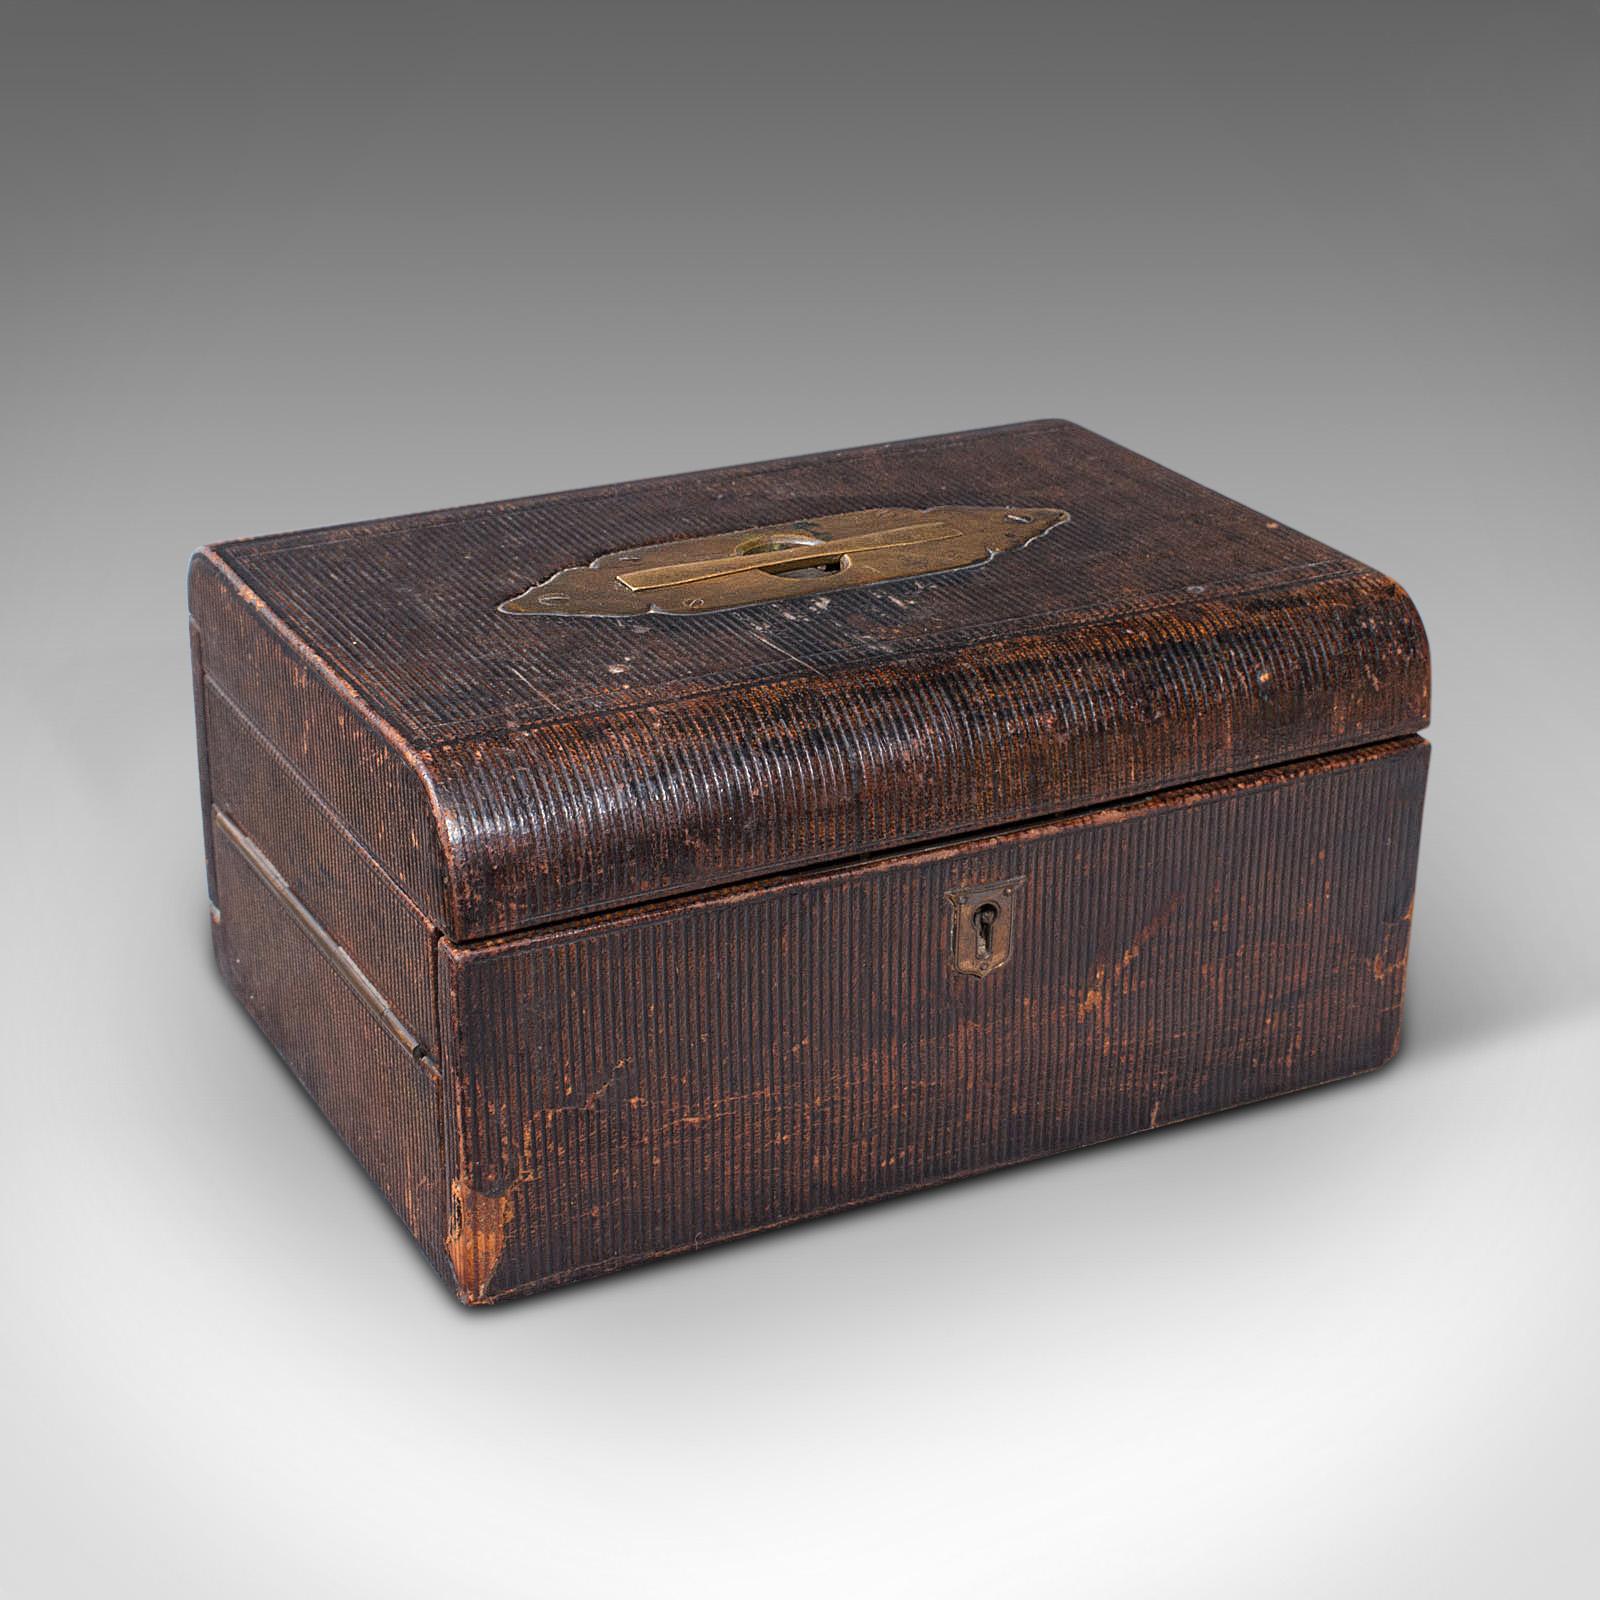 Il s'agit d'un ancien vanity box de voyage. Coffret de correspondance de campagne anglais, relié en cuir, datant de la fin de la période victorienne, vers 1880.

Mallette de voyage délicieusement complète, avec une agréable finition